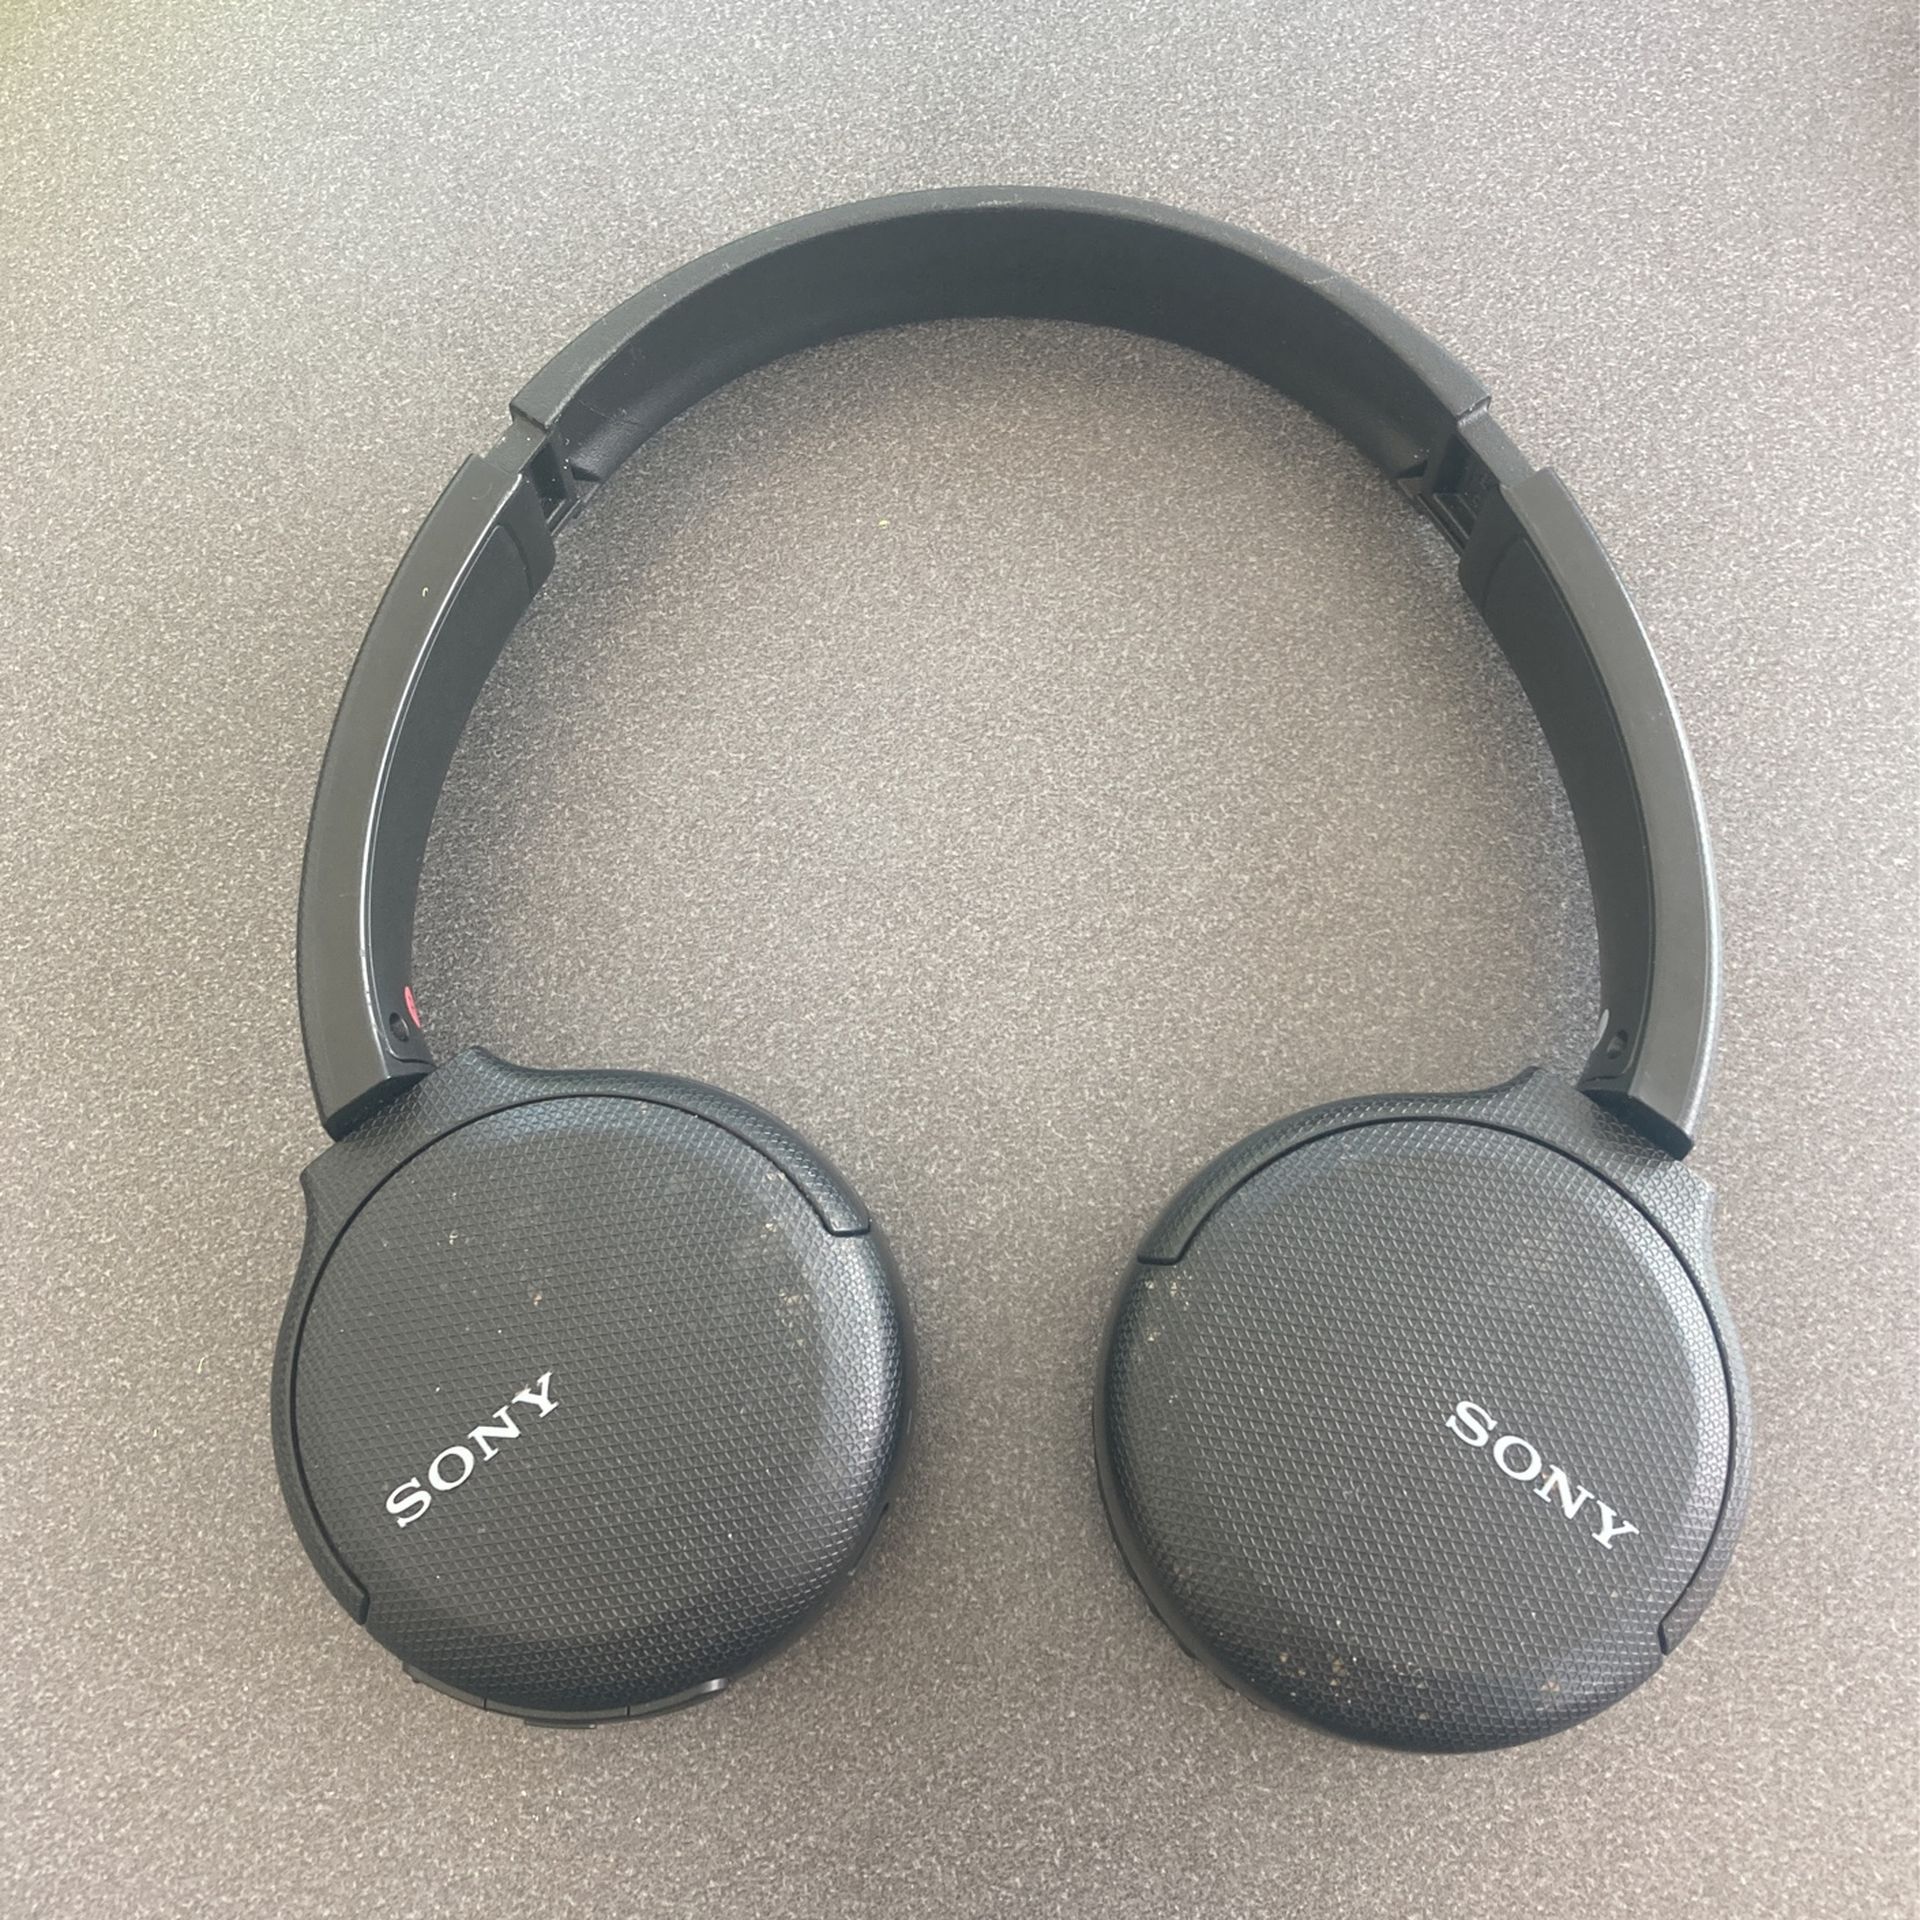 Sony headphones (Bluetooth )